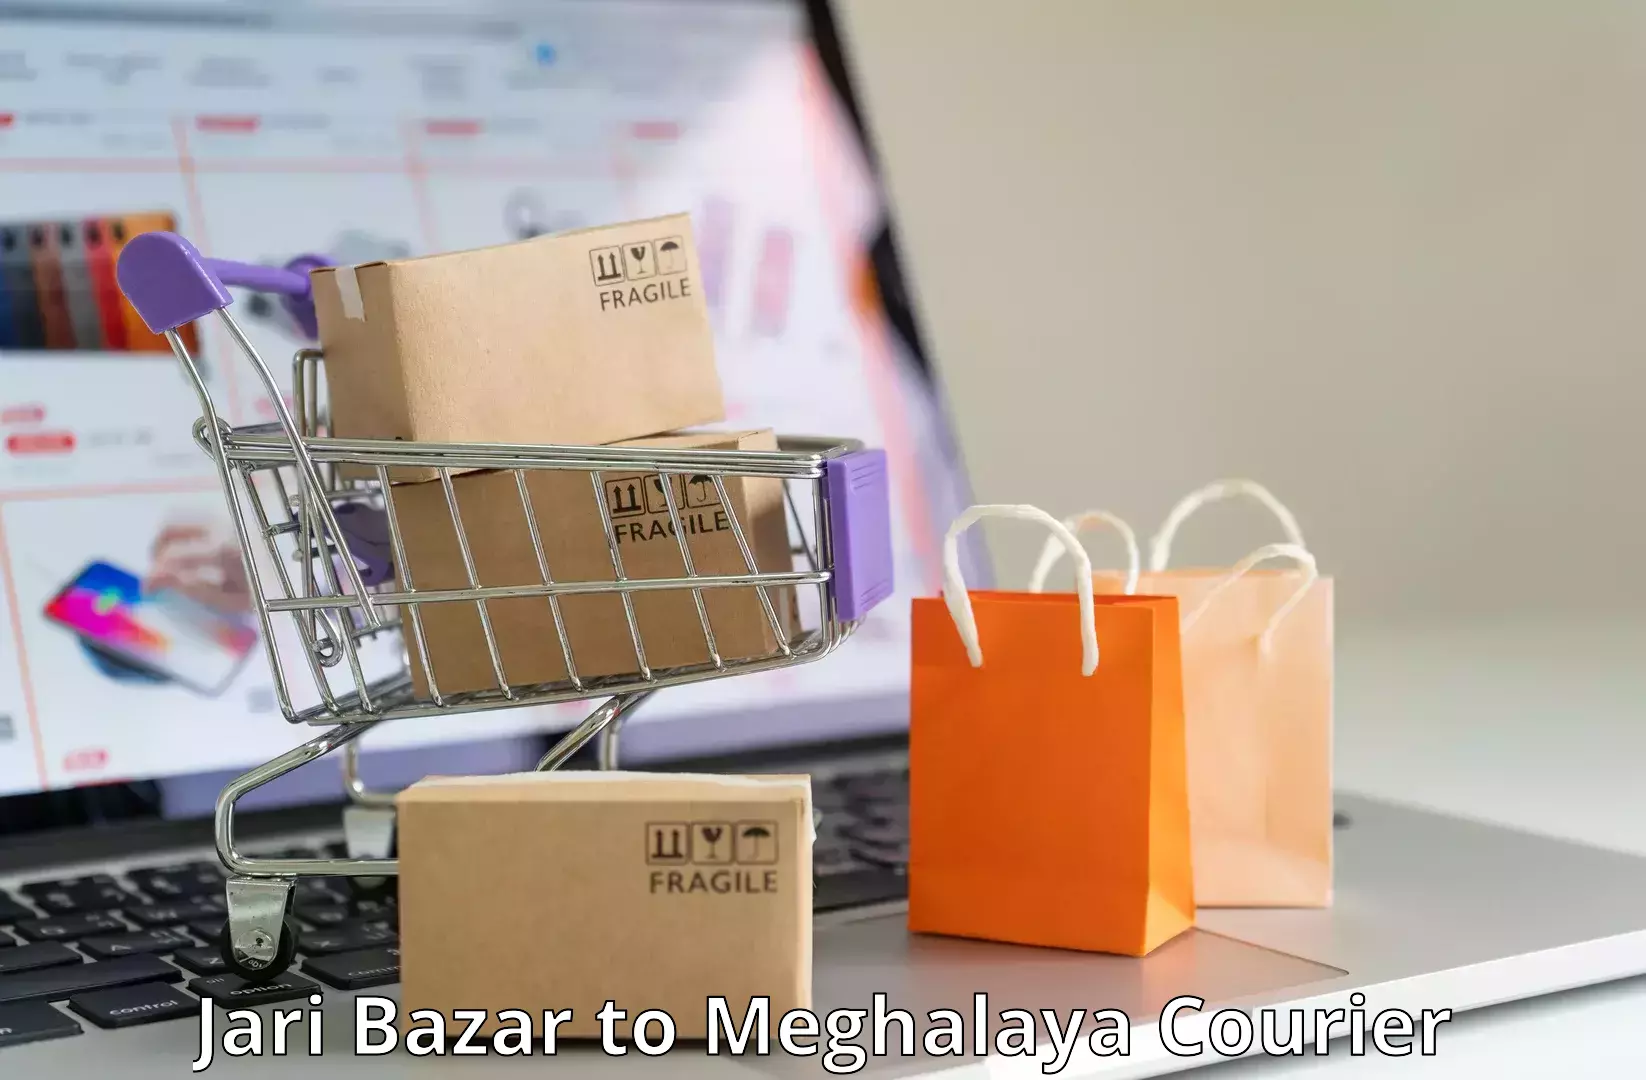 Affordable shipping rates Jari Bazar to Shillong